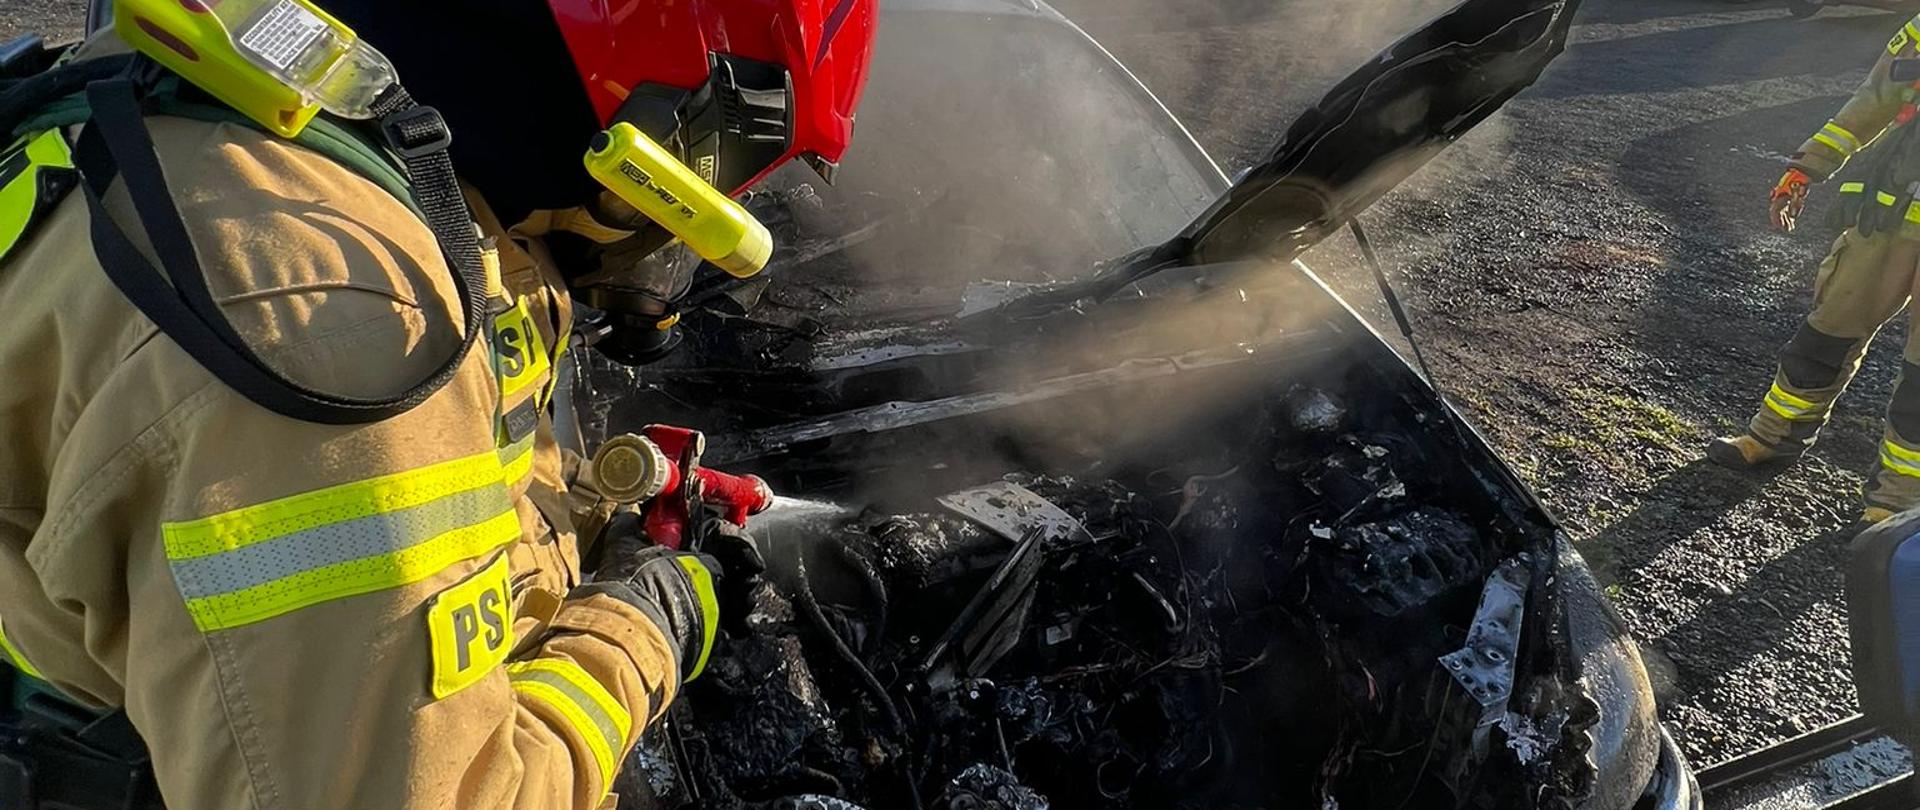 Na zdjęciu widać strażaka gaszącego pożar pojazdu osobowego 